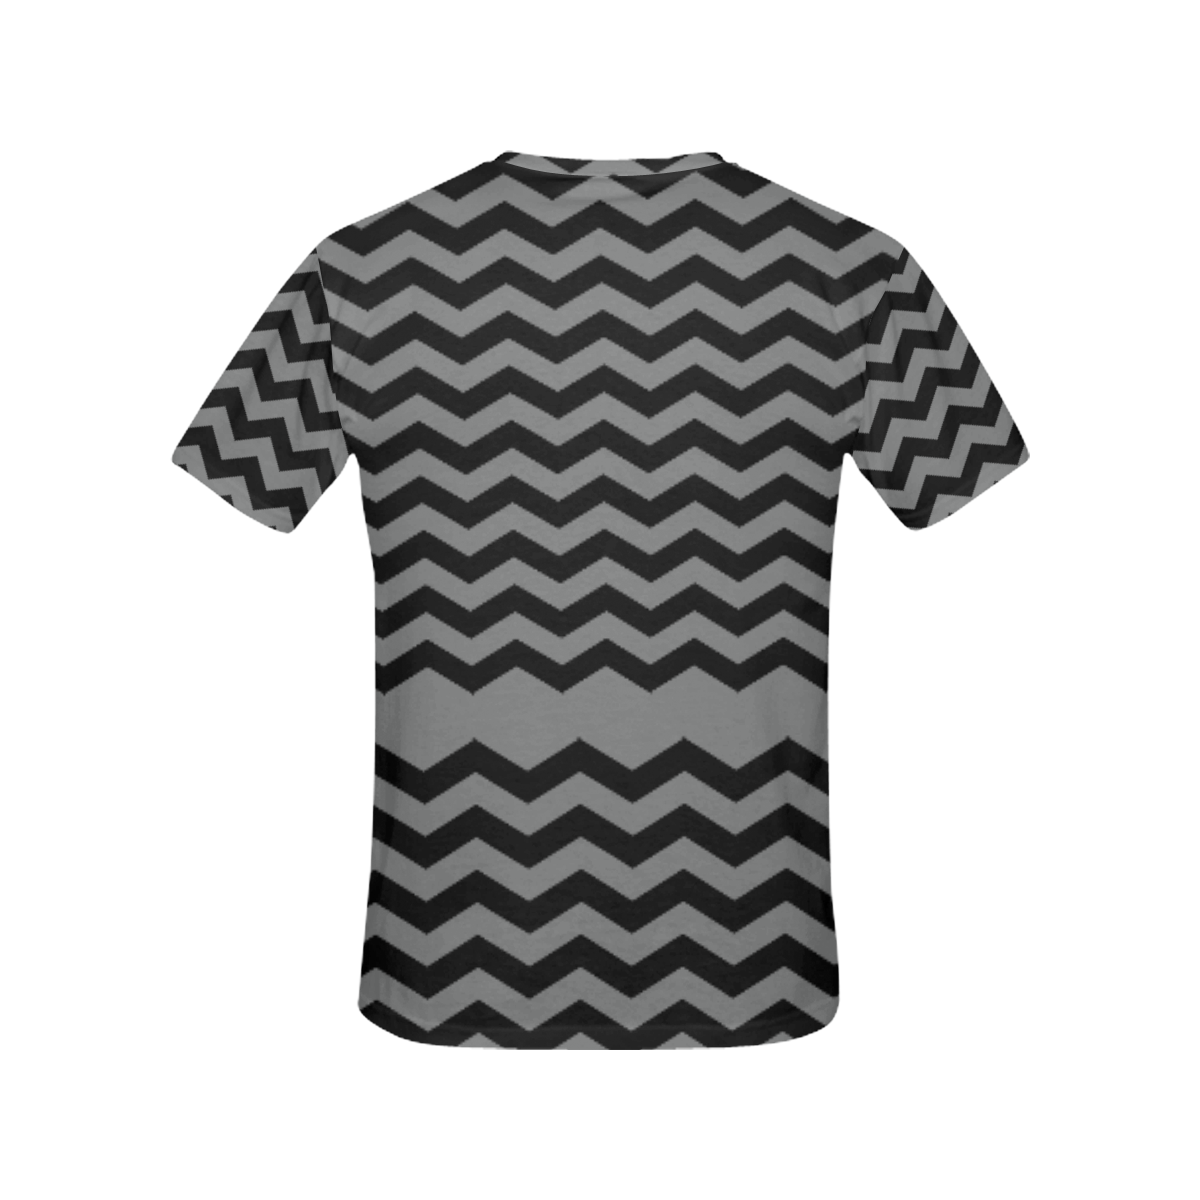 Chevrons black & gray VAS2 All Over Print T-Shirt for Women (USA Size) (Model T40)